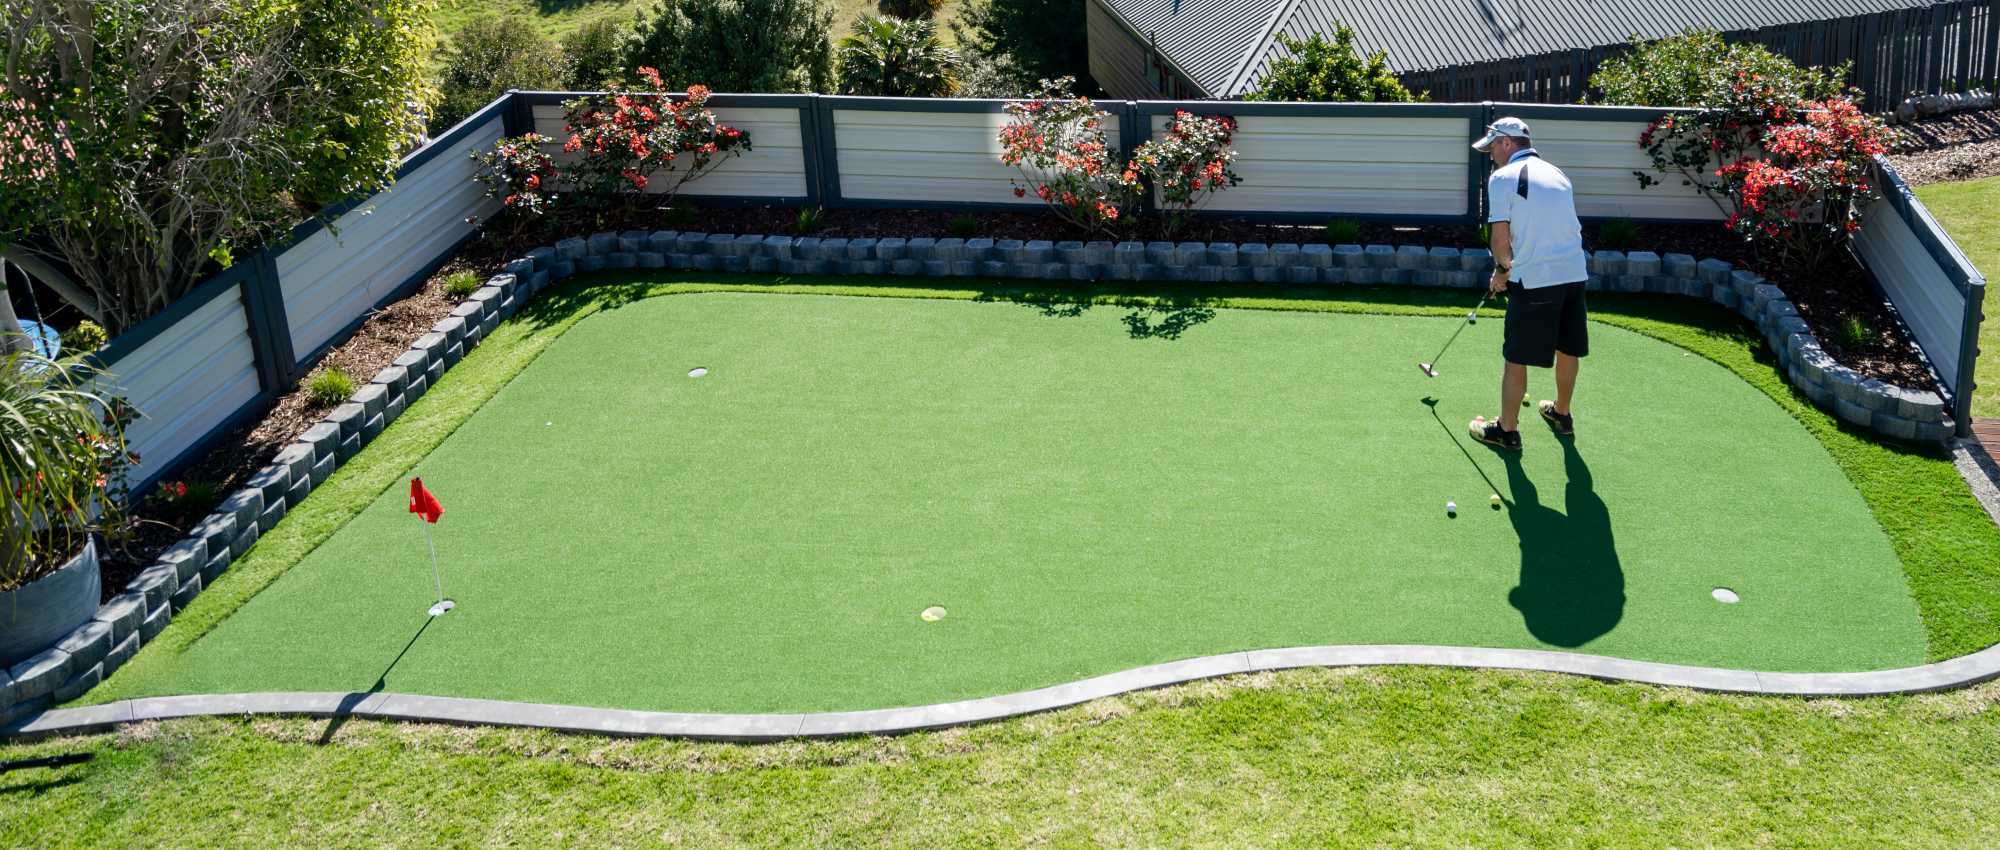 Auckland Artificial Grass